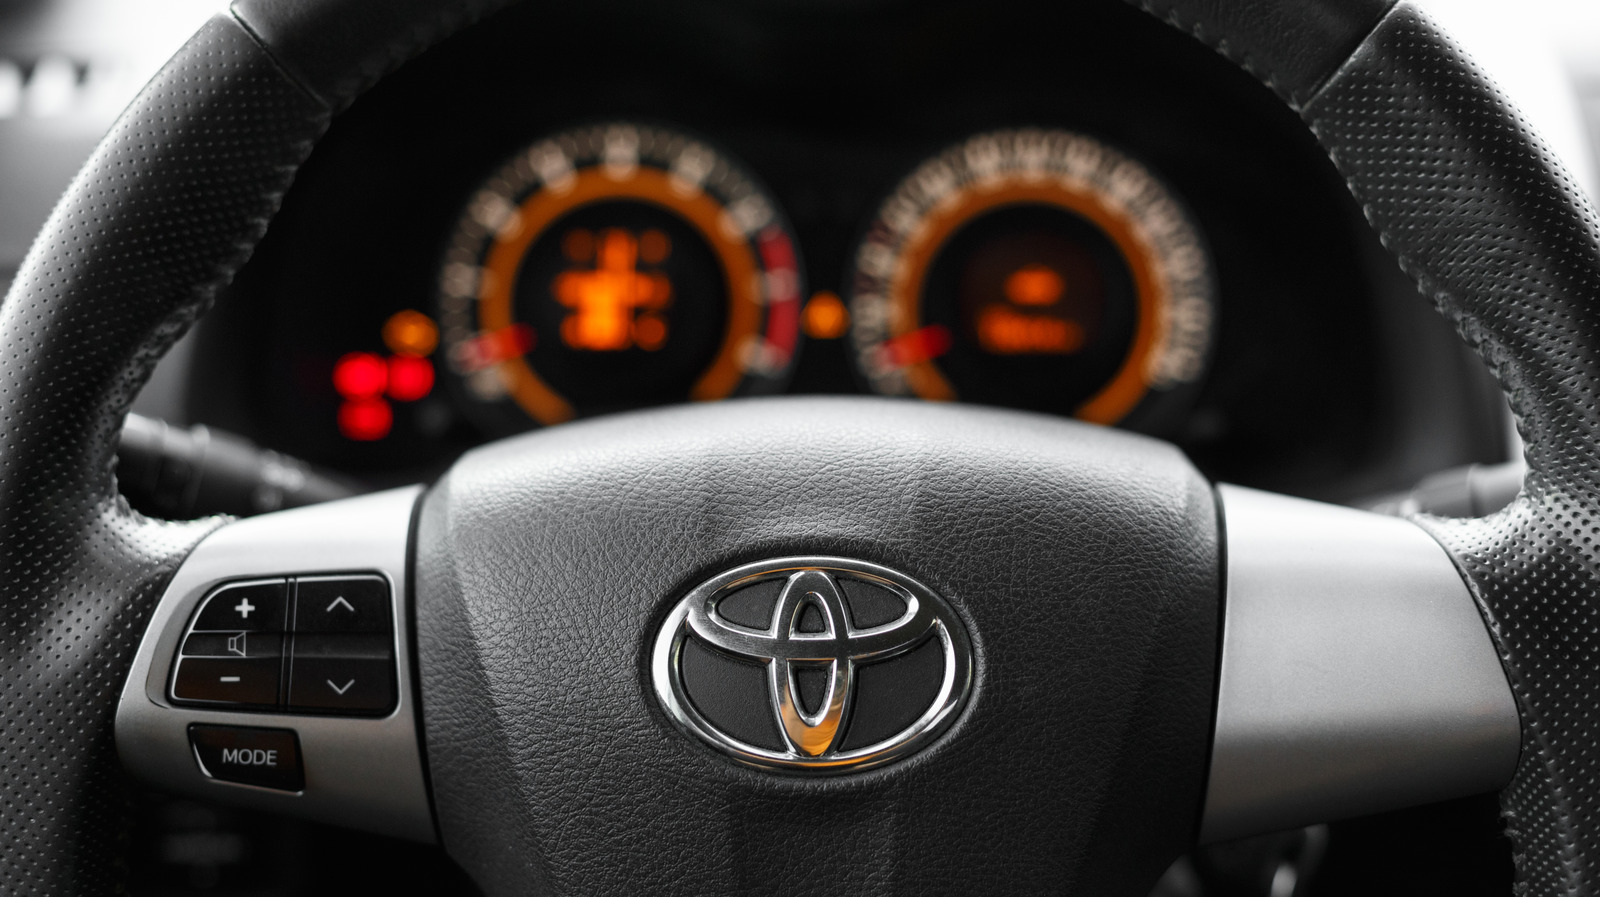 Cómo restablecer la luz de mantenimiento de su Toyota